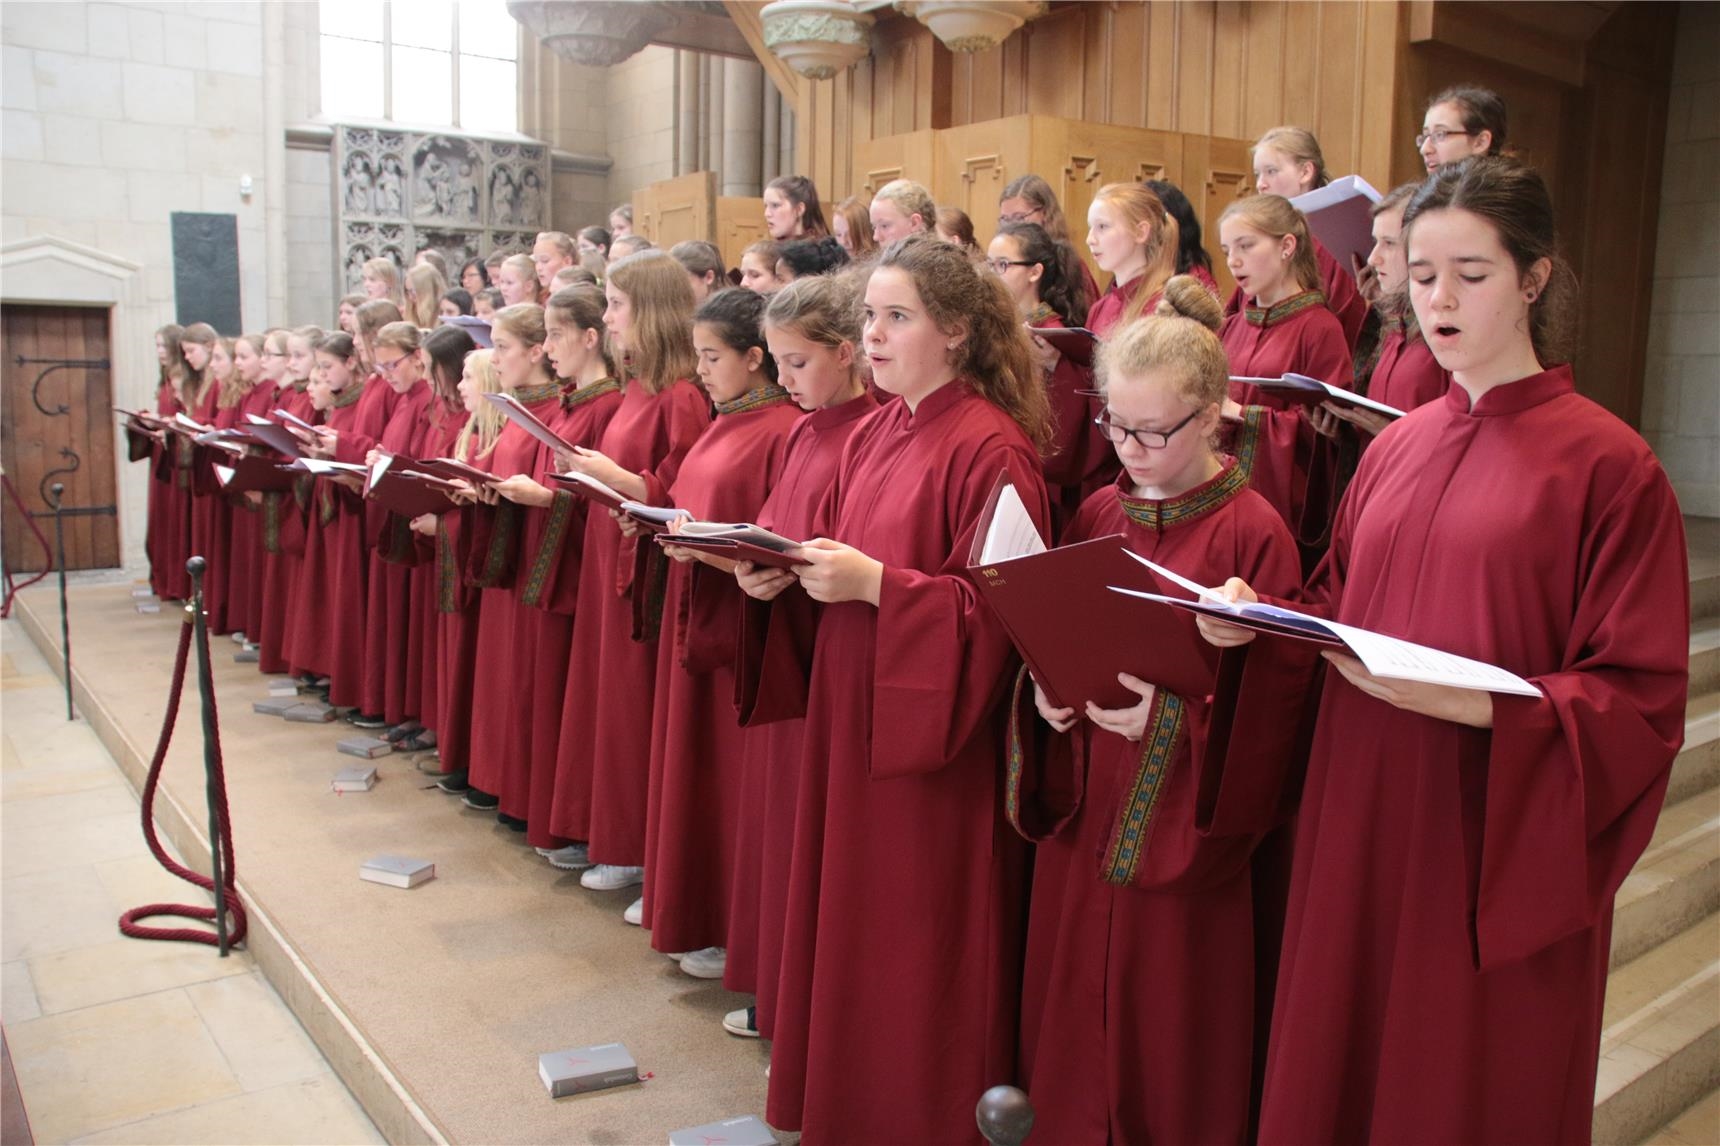 Das Foto zeigt einen großen Chor junger Schüler, die rot gewandet sind, vor einer Orgel (Harald Westbeld)